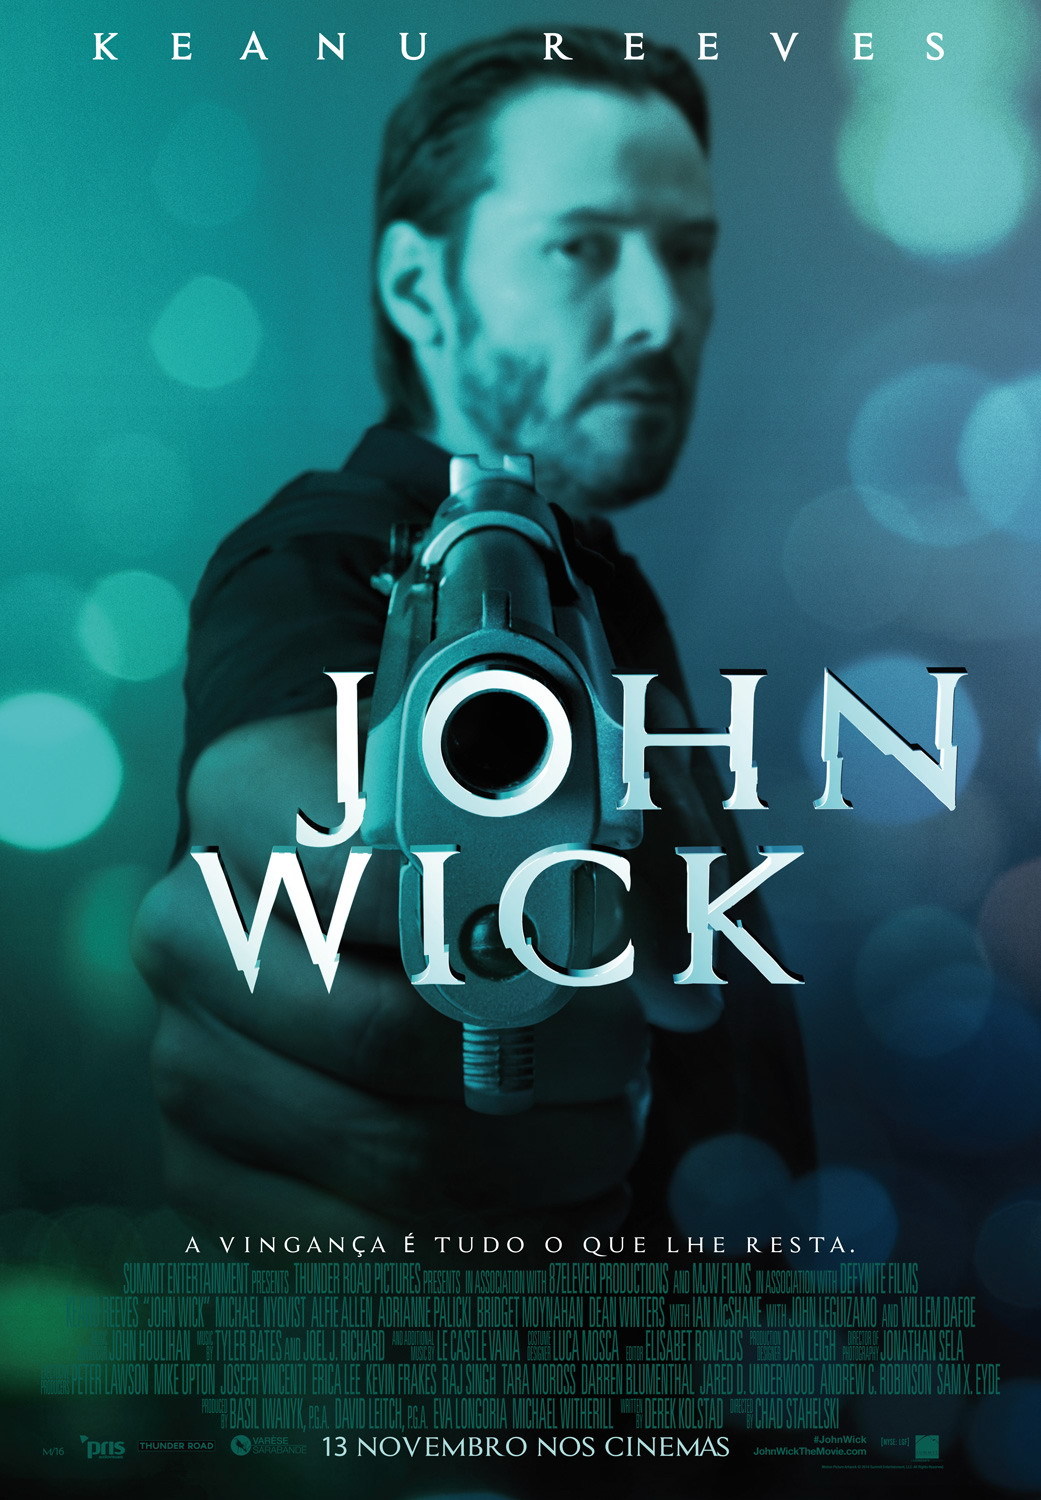 Keanu Reeves quebra tudo no novo trailer DUBLADO de 'John Wick 4